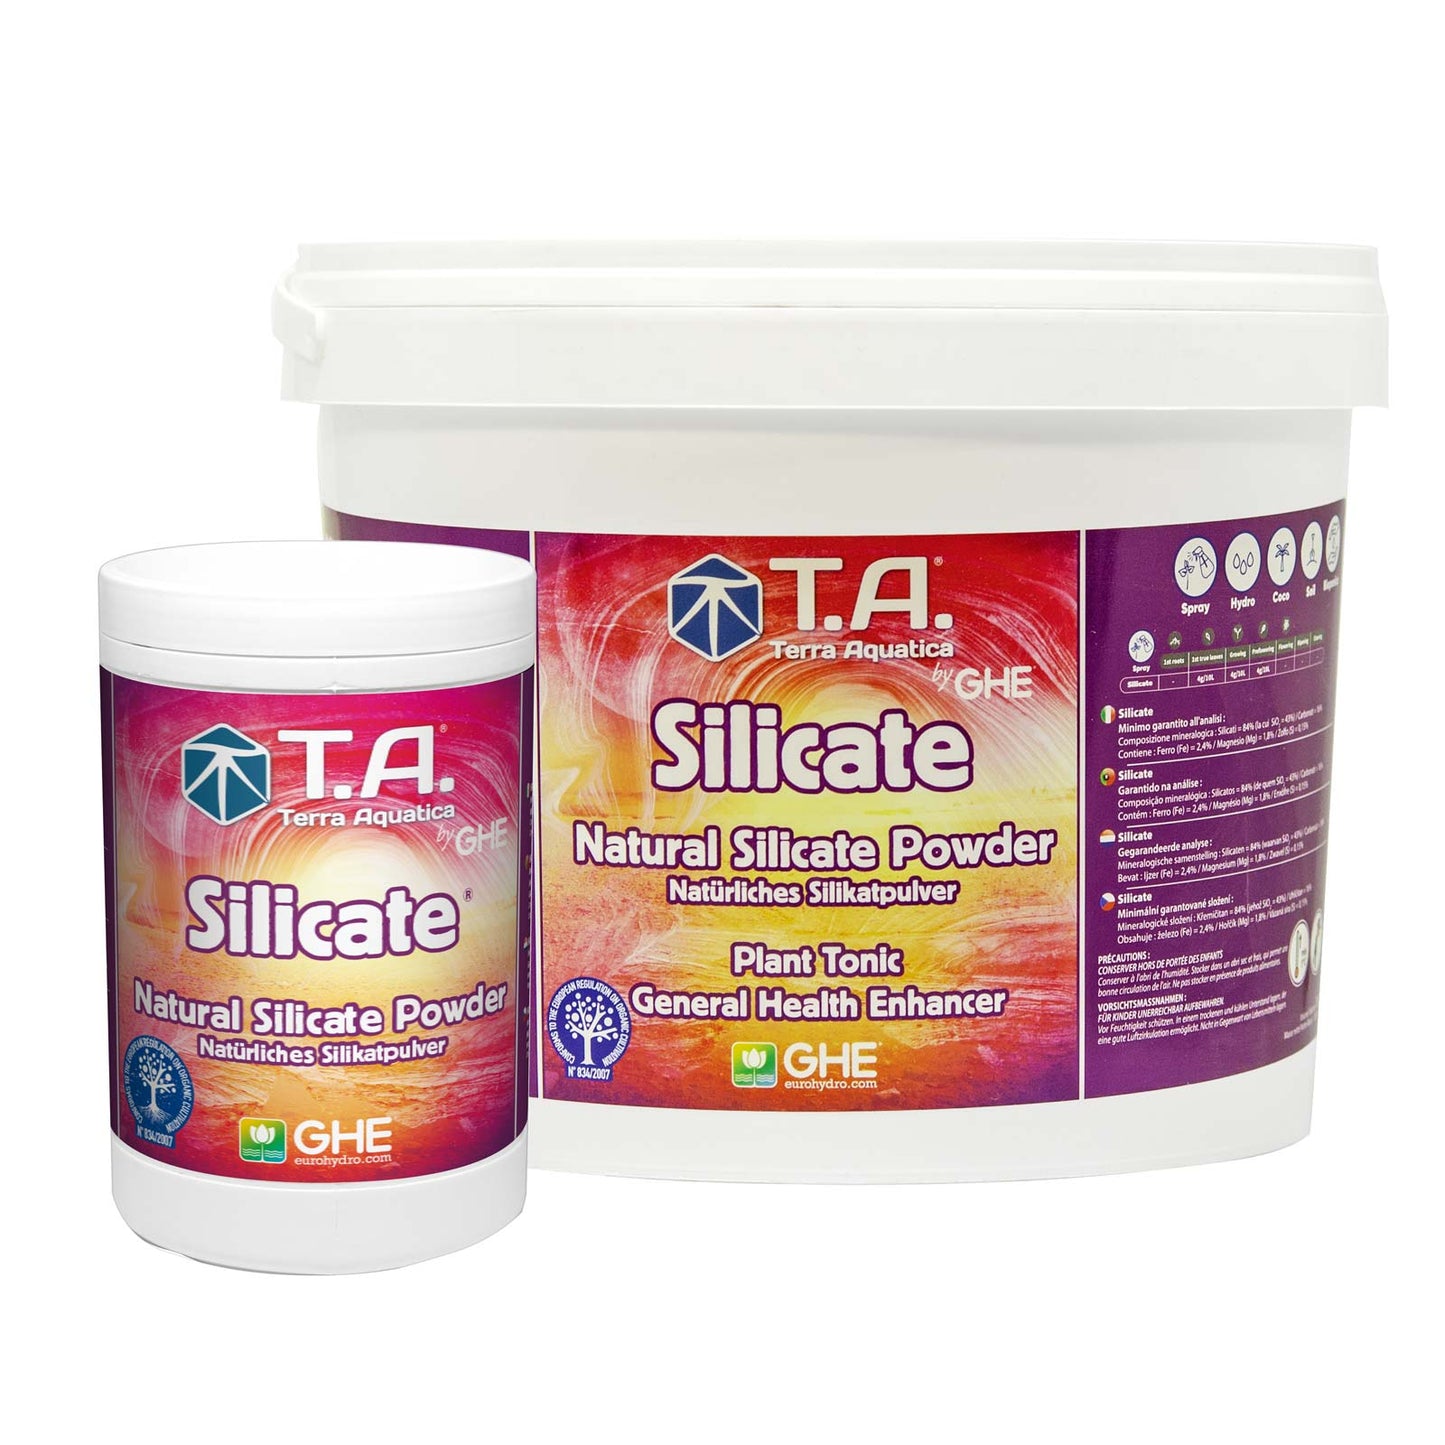 T.A. Silicate シリケート（粉末タイプ天然ケイ酸塩活力剤）